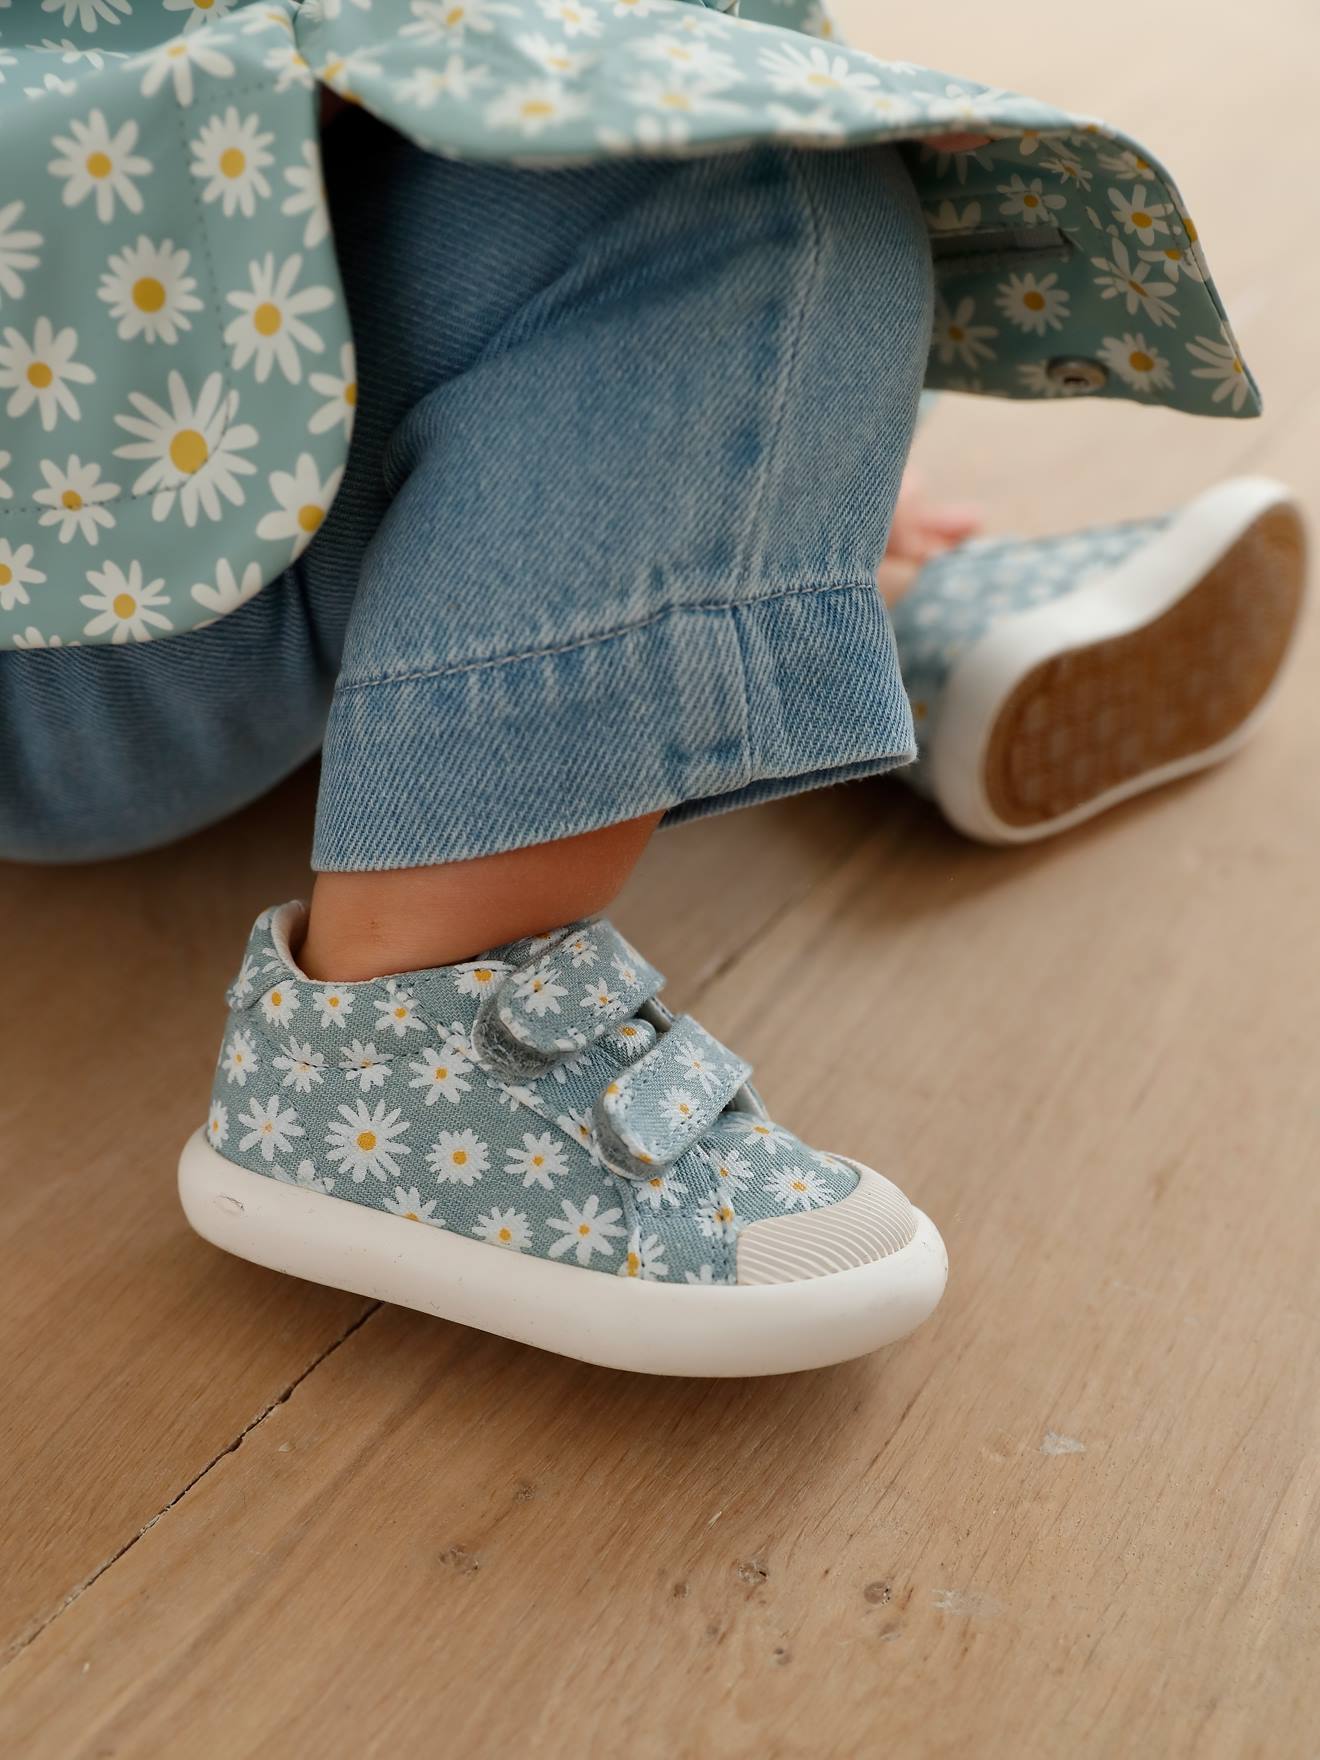 Stoffen tennisschoenen met klittenband voor babymeisjes blauwe madeliefjesprint